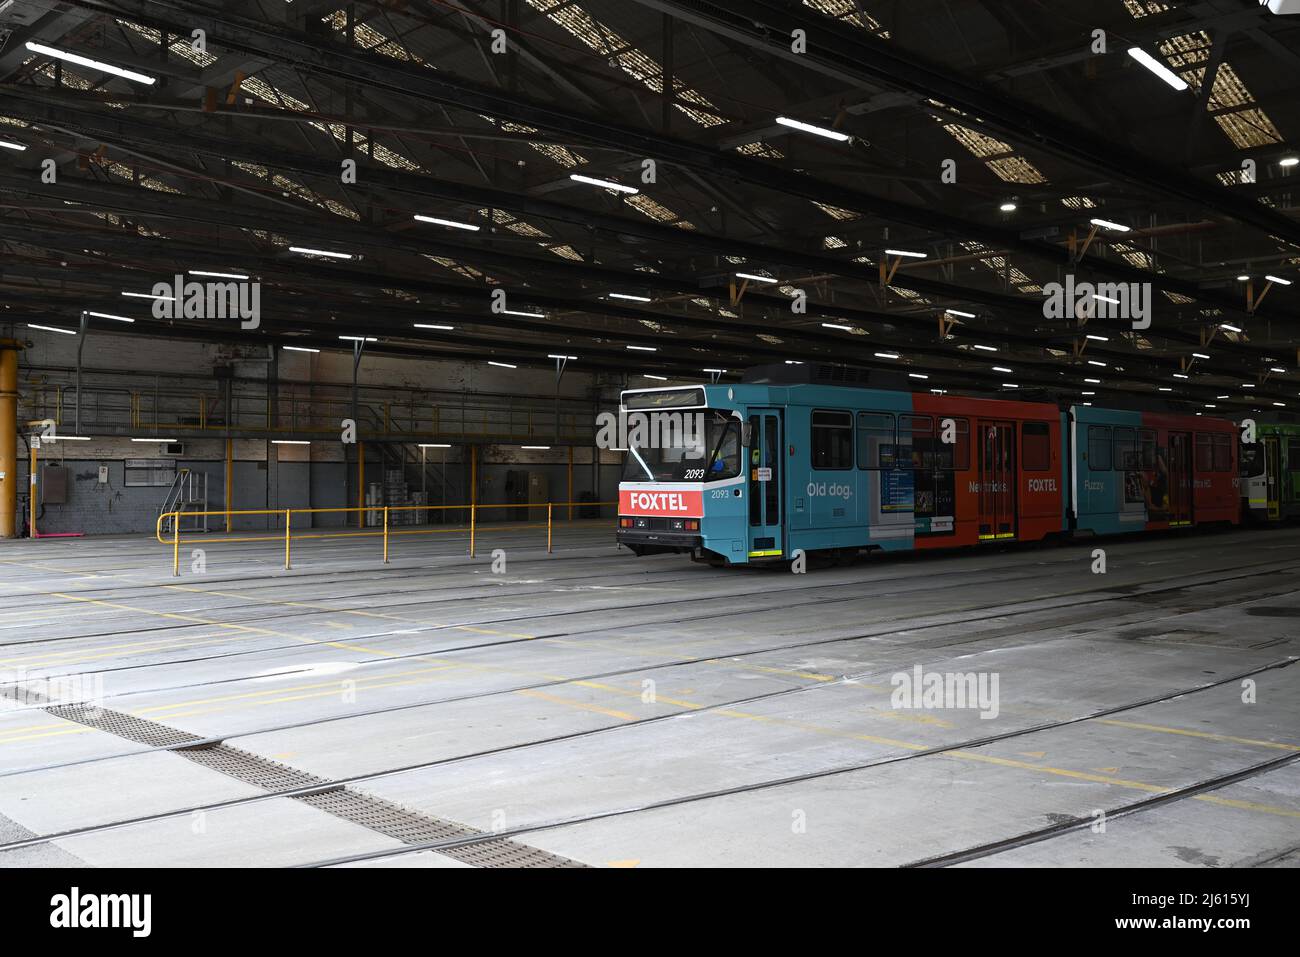 Intérieur presque vide du hangar de Tram Depot de Camberwell, avec un tram de classe B avec publicité Foxtel assis au milieu Banque D'Images